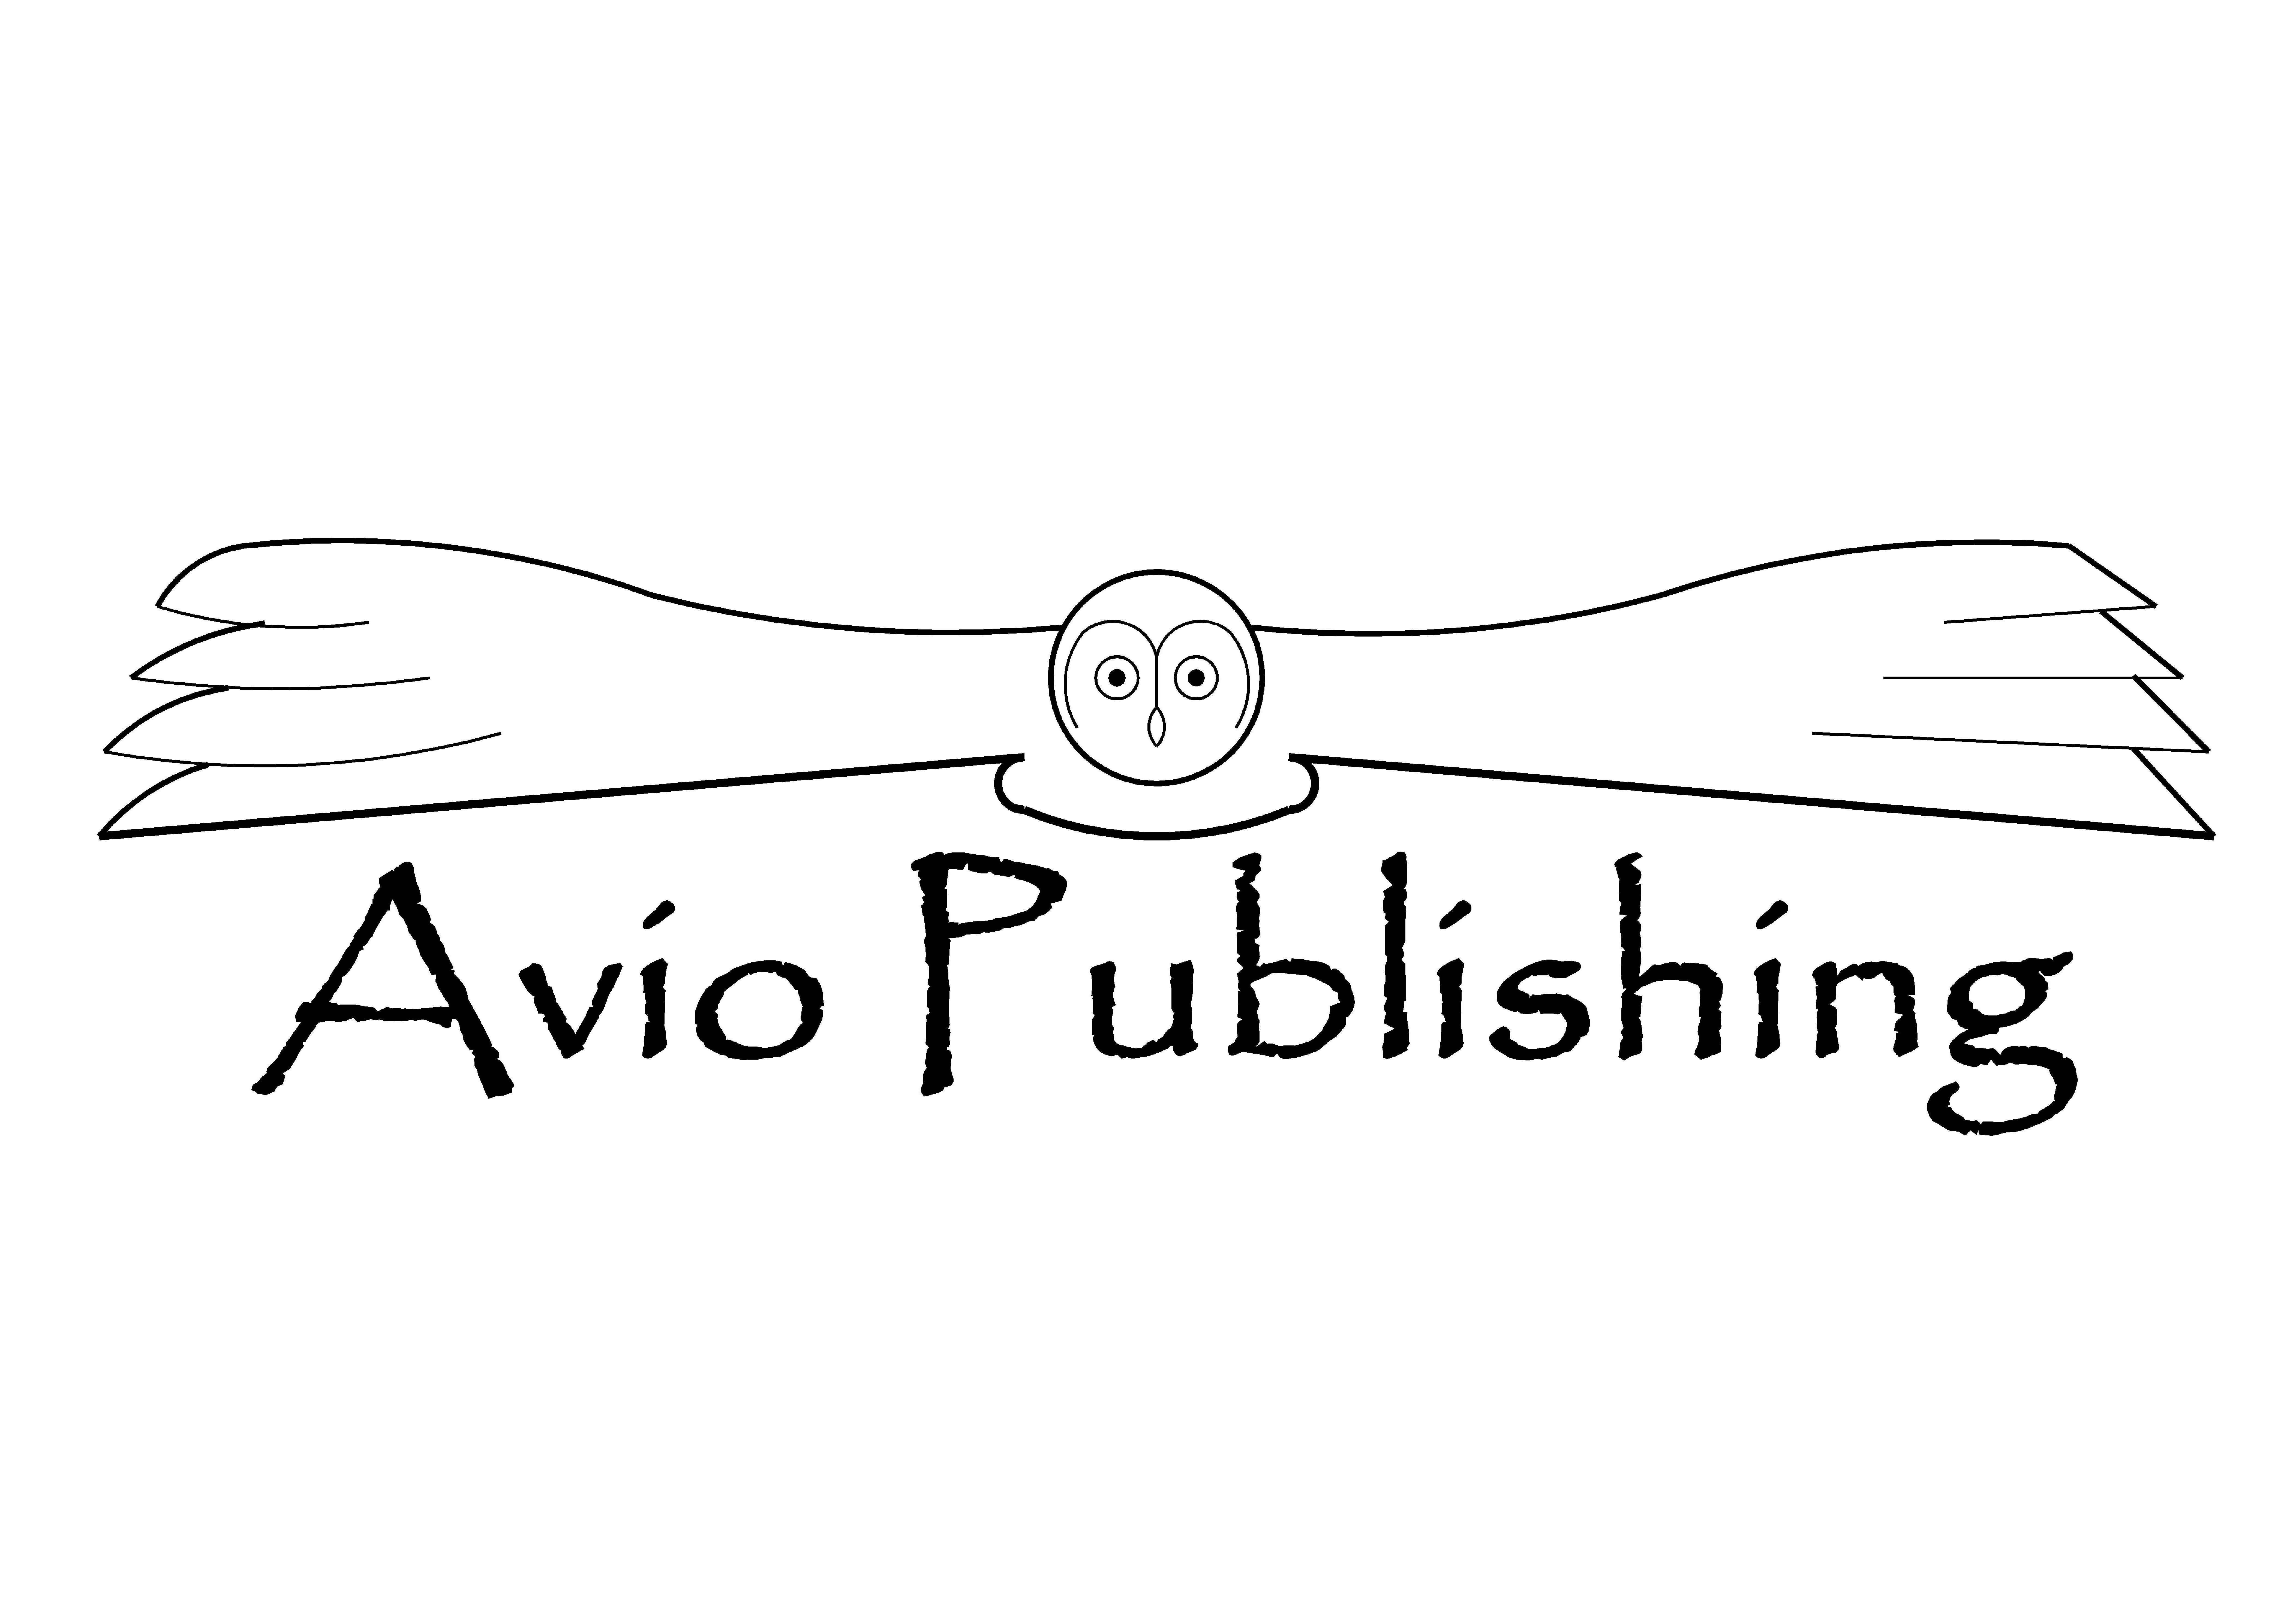 Avio Publishing